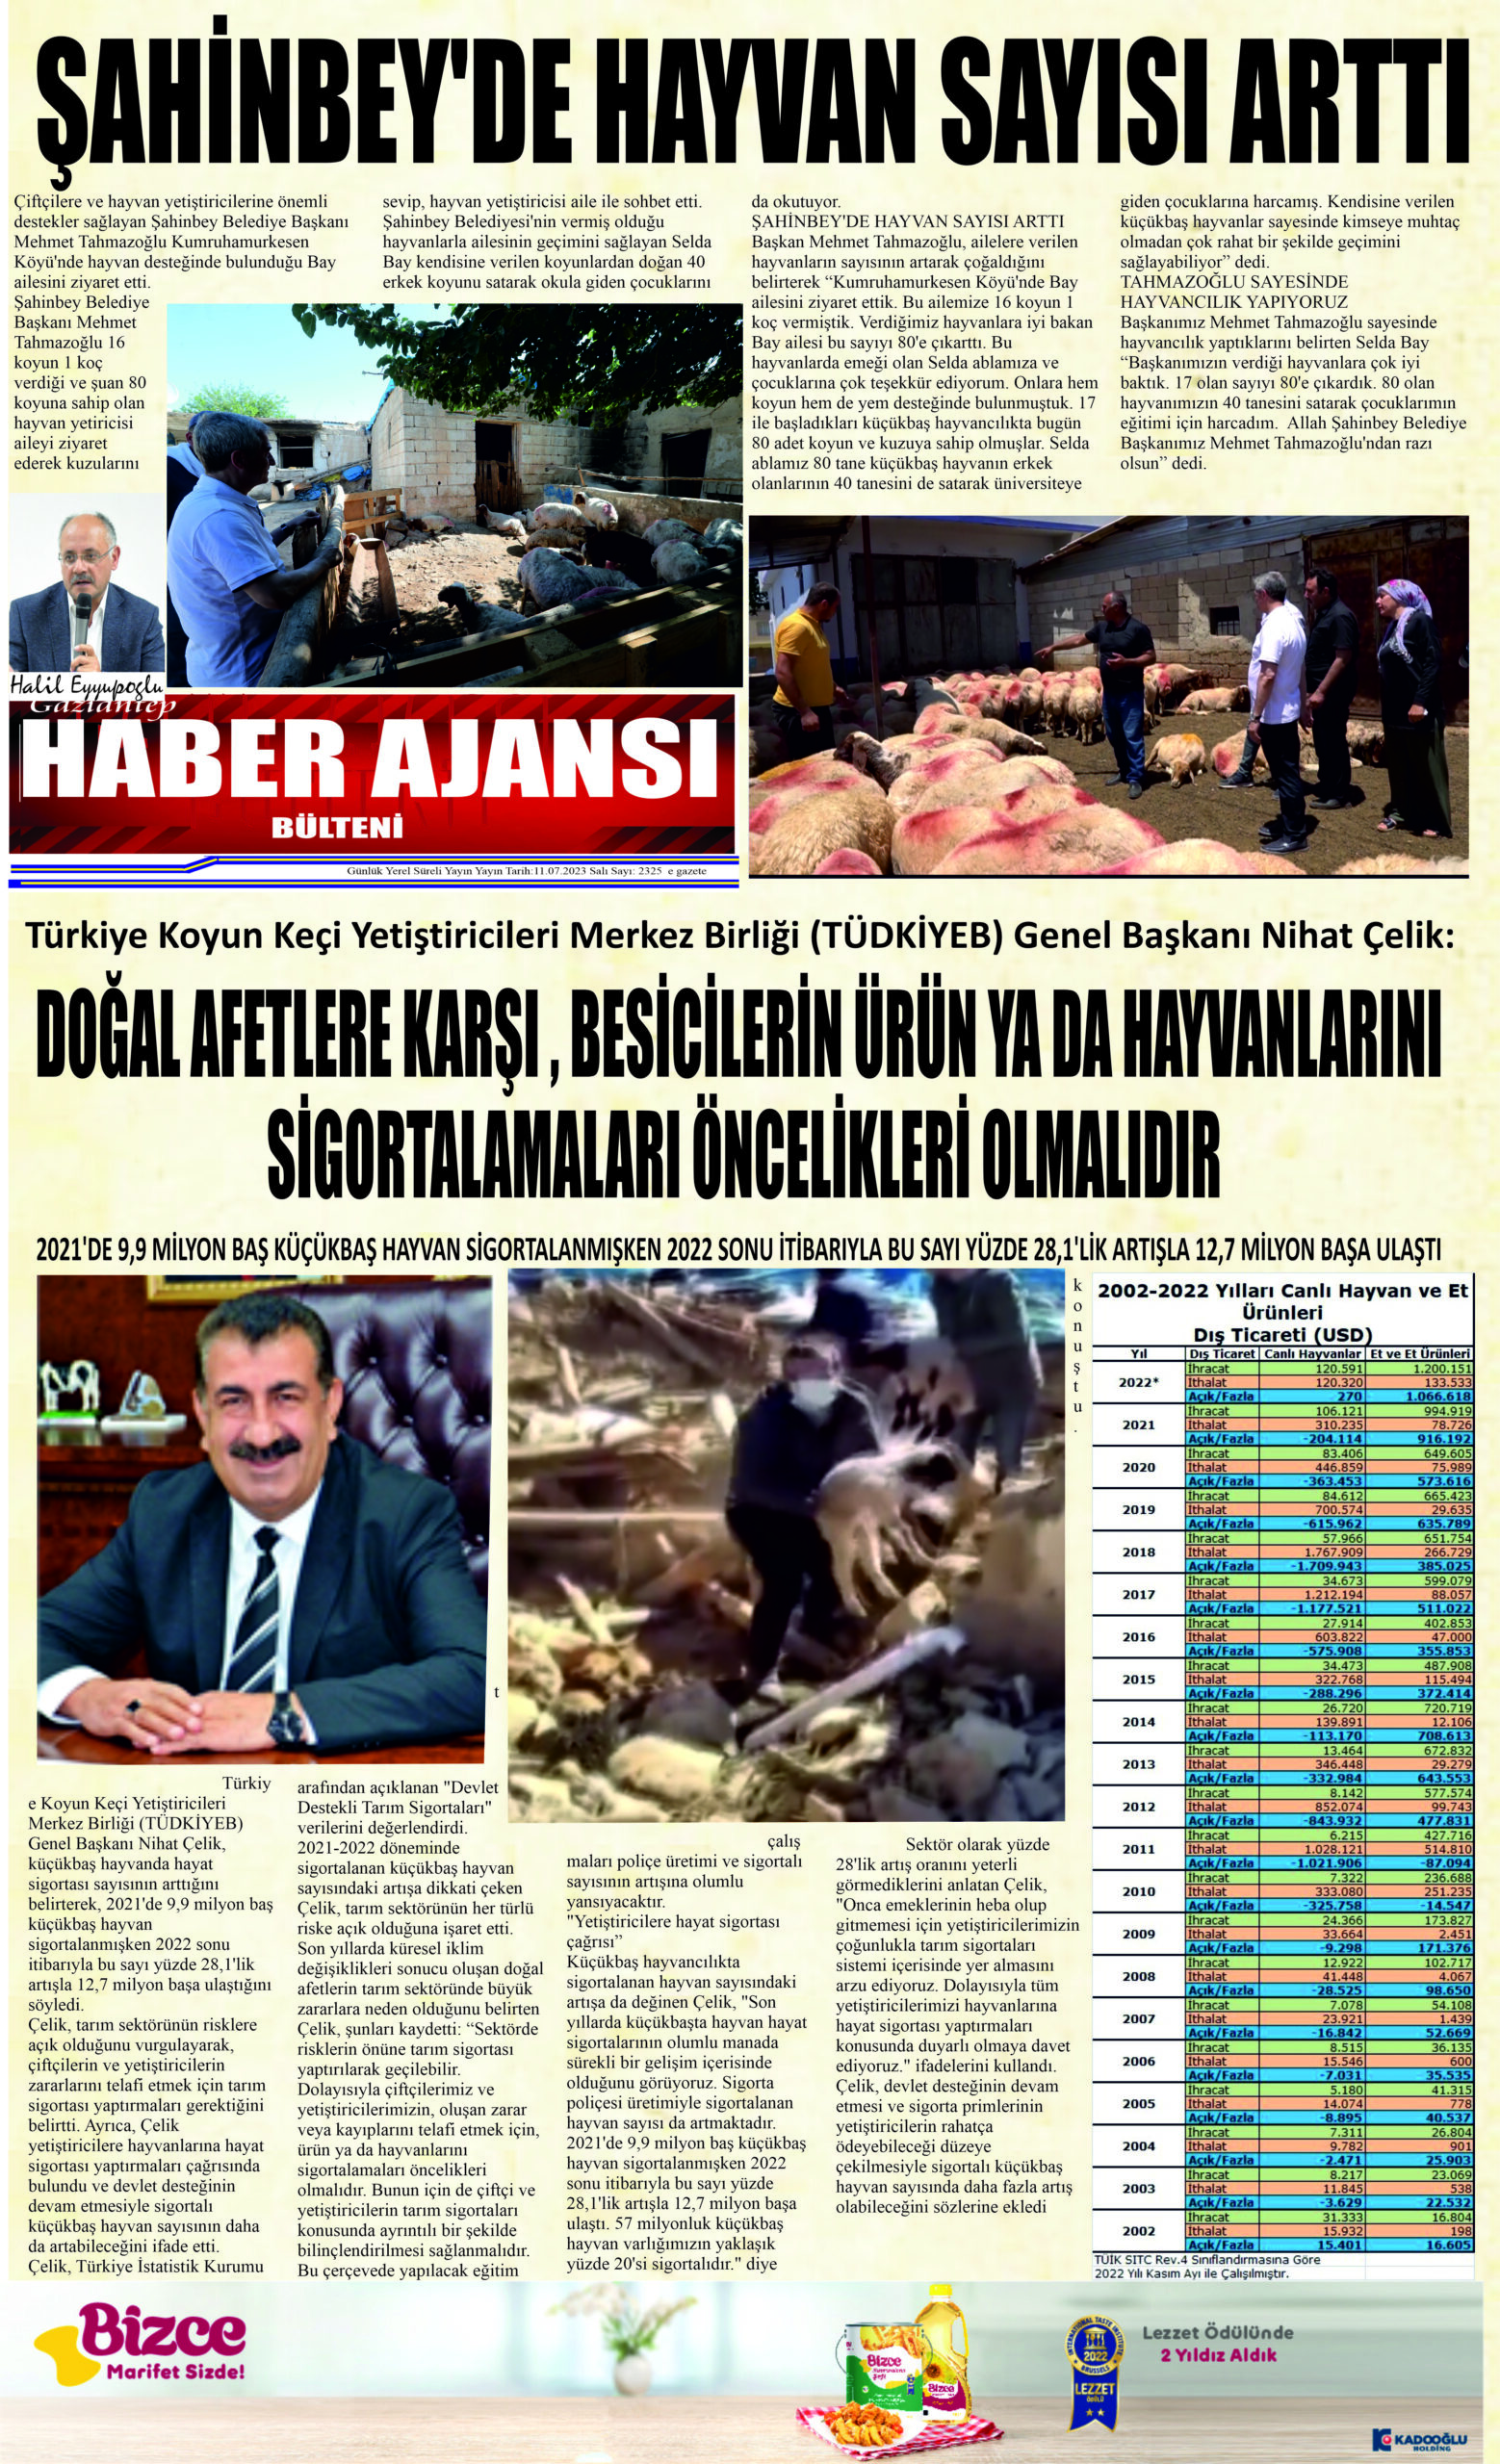 Gaziantep Haber Ajansı Bülteni Salı 11.07.2023 e gazete